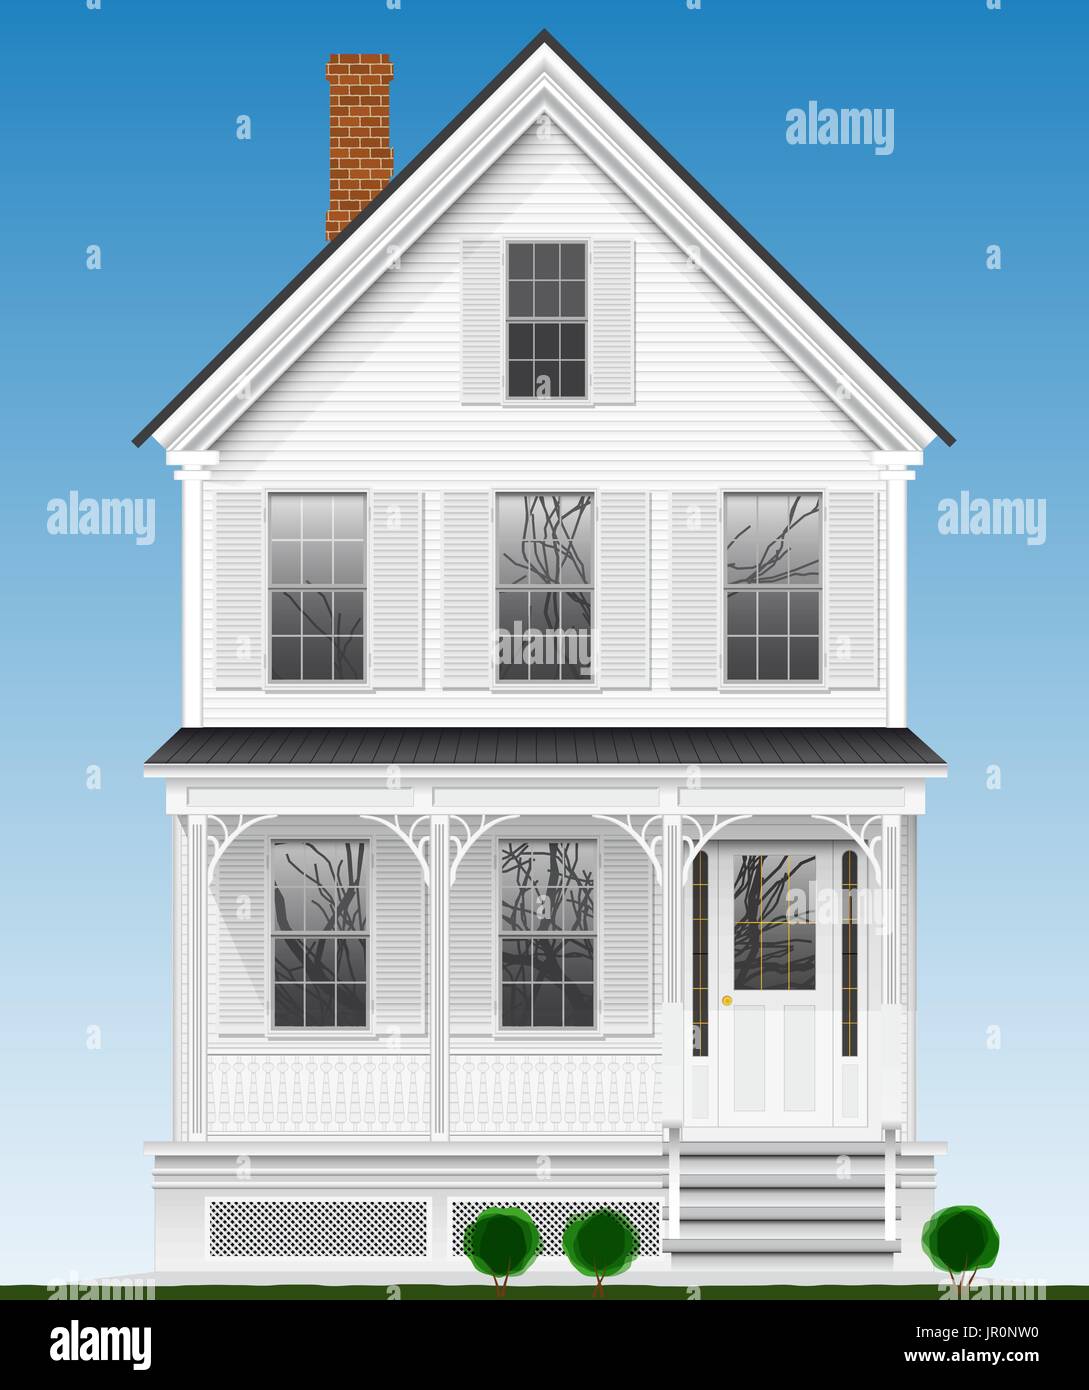 Un tipico e Americano classico a casa di legno verniciato con vernice bianca. Due piani, interrato e mansarda. Illustrazione Vettoriale